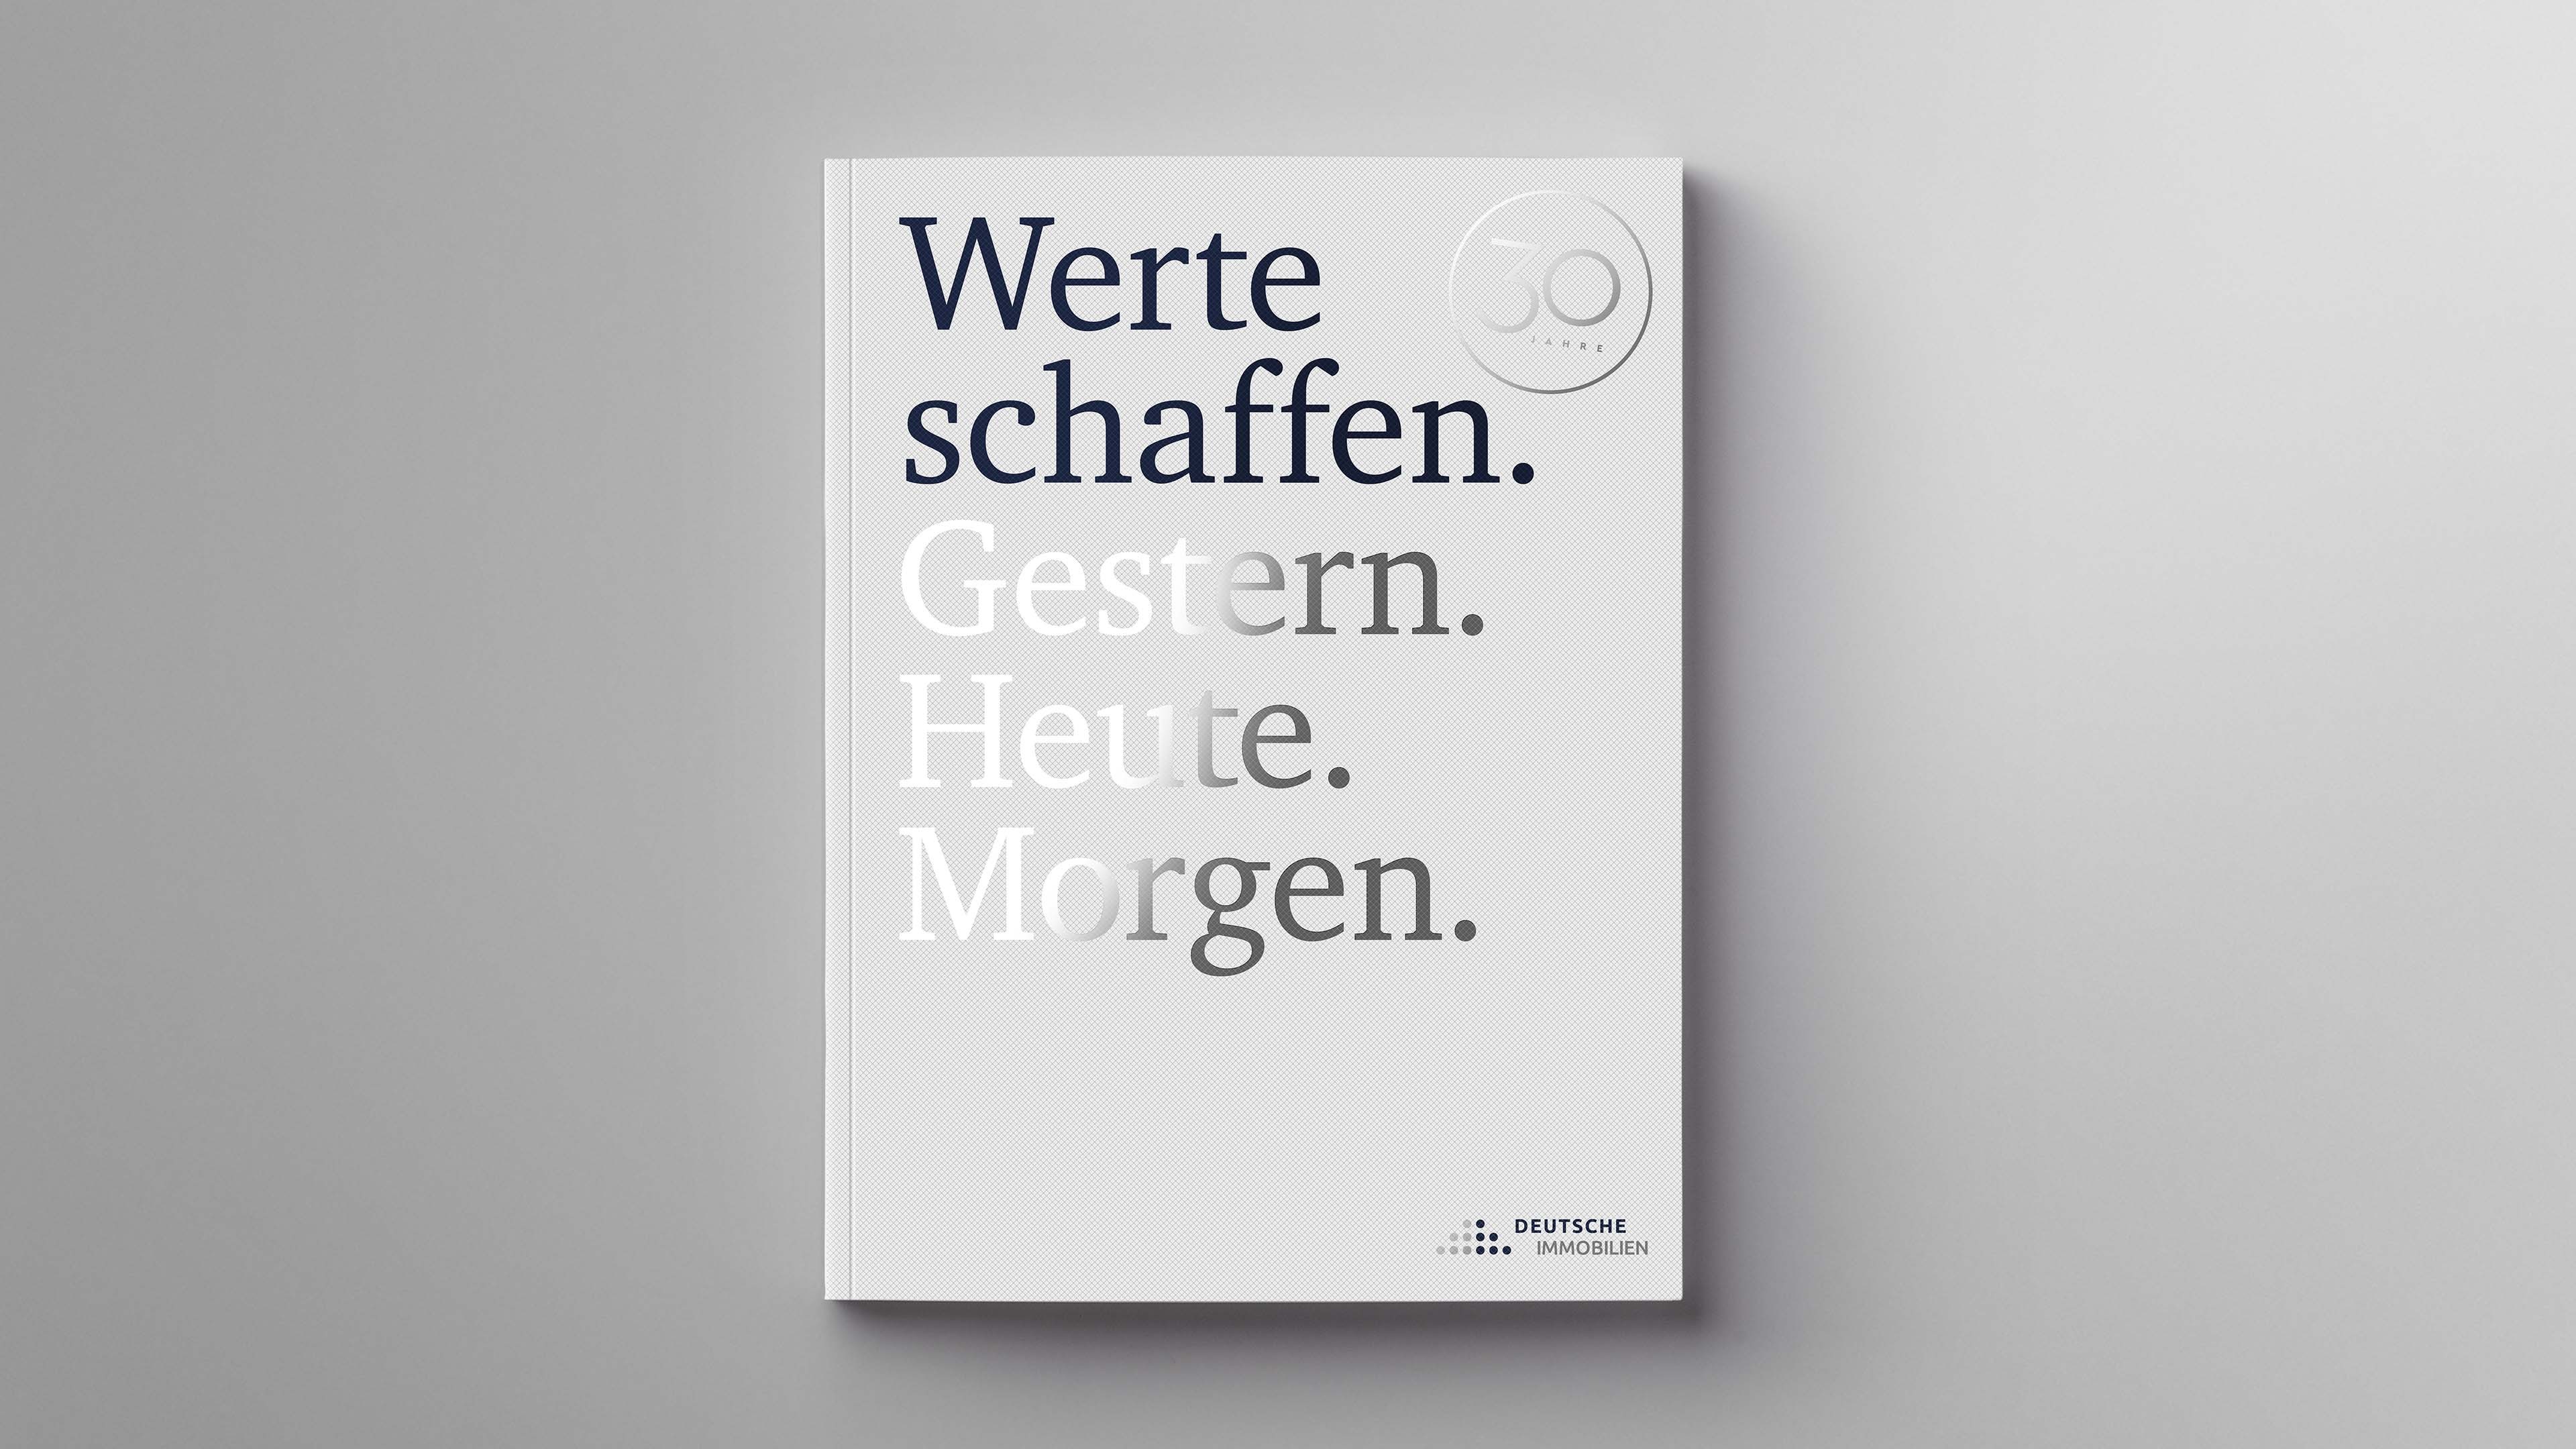 Titelcover, welches die Veredlung der Imagebroschüre Deutsche Immobilien hervorhebt